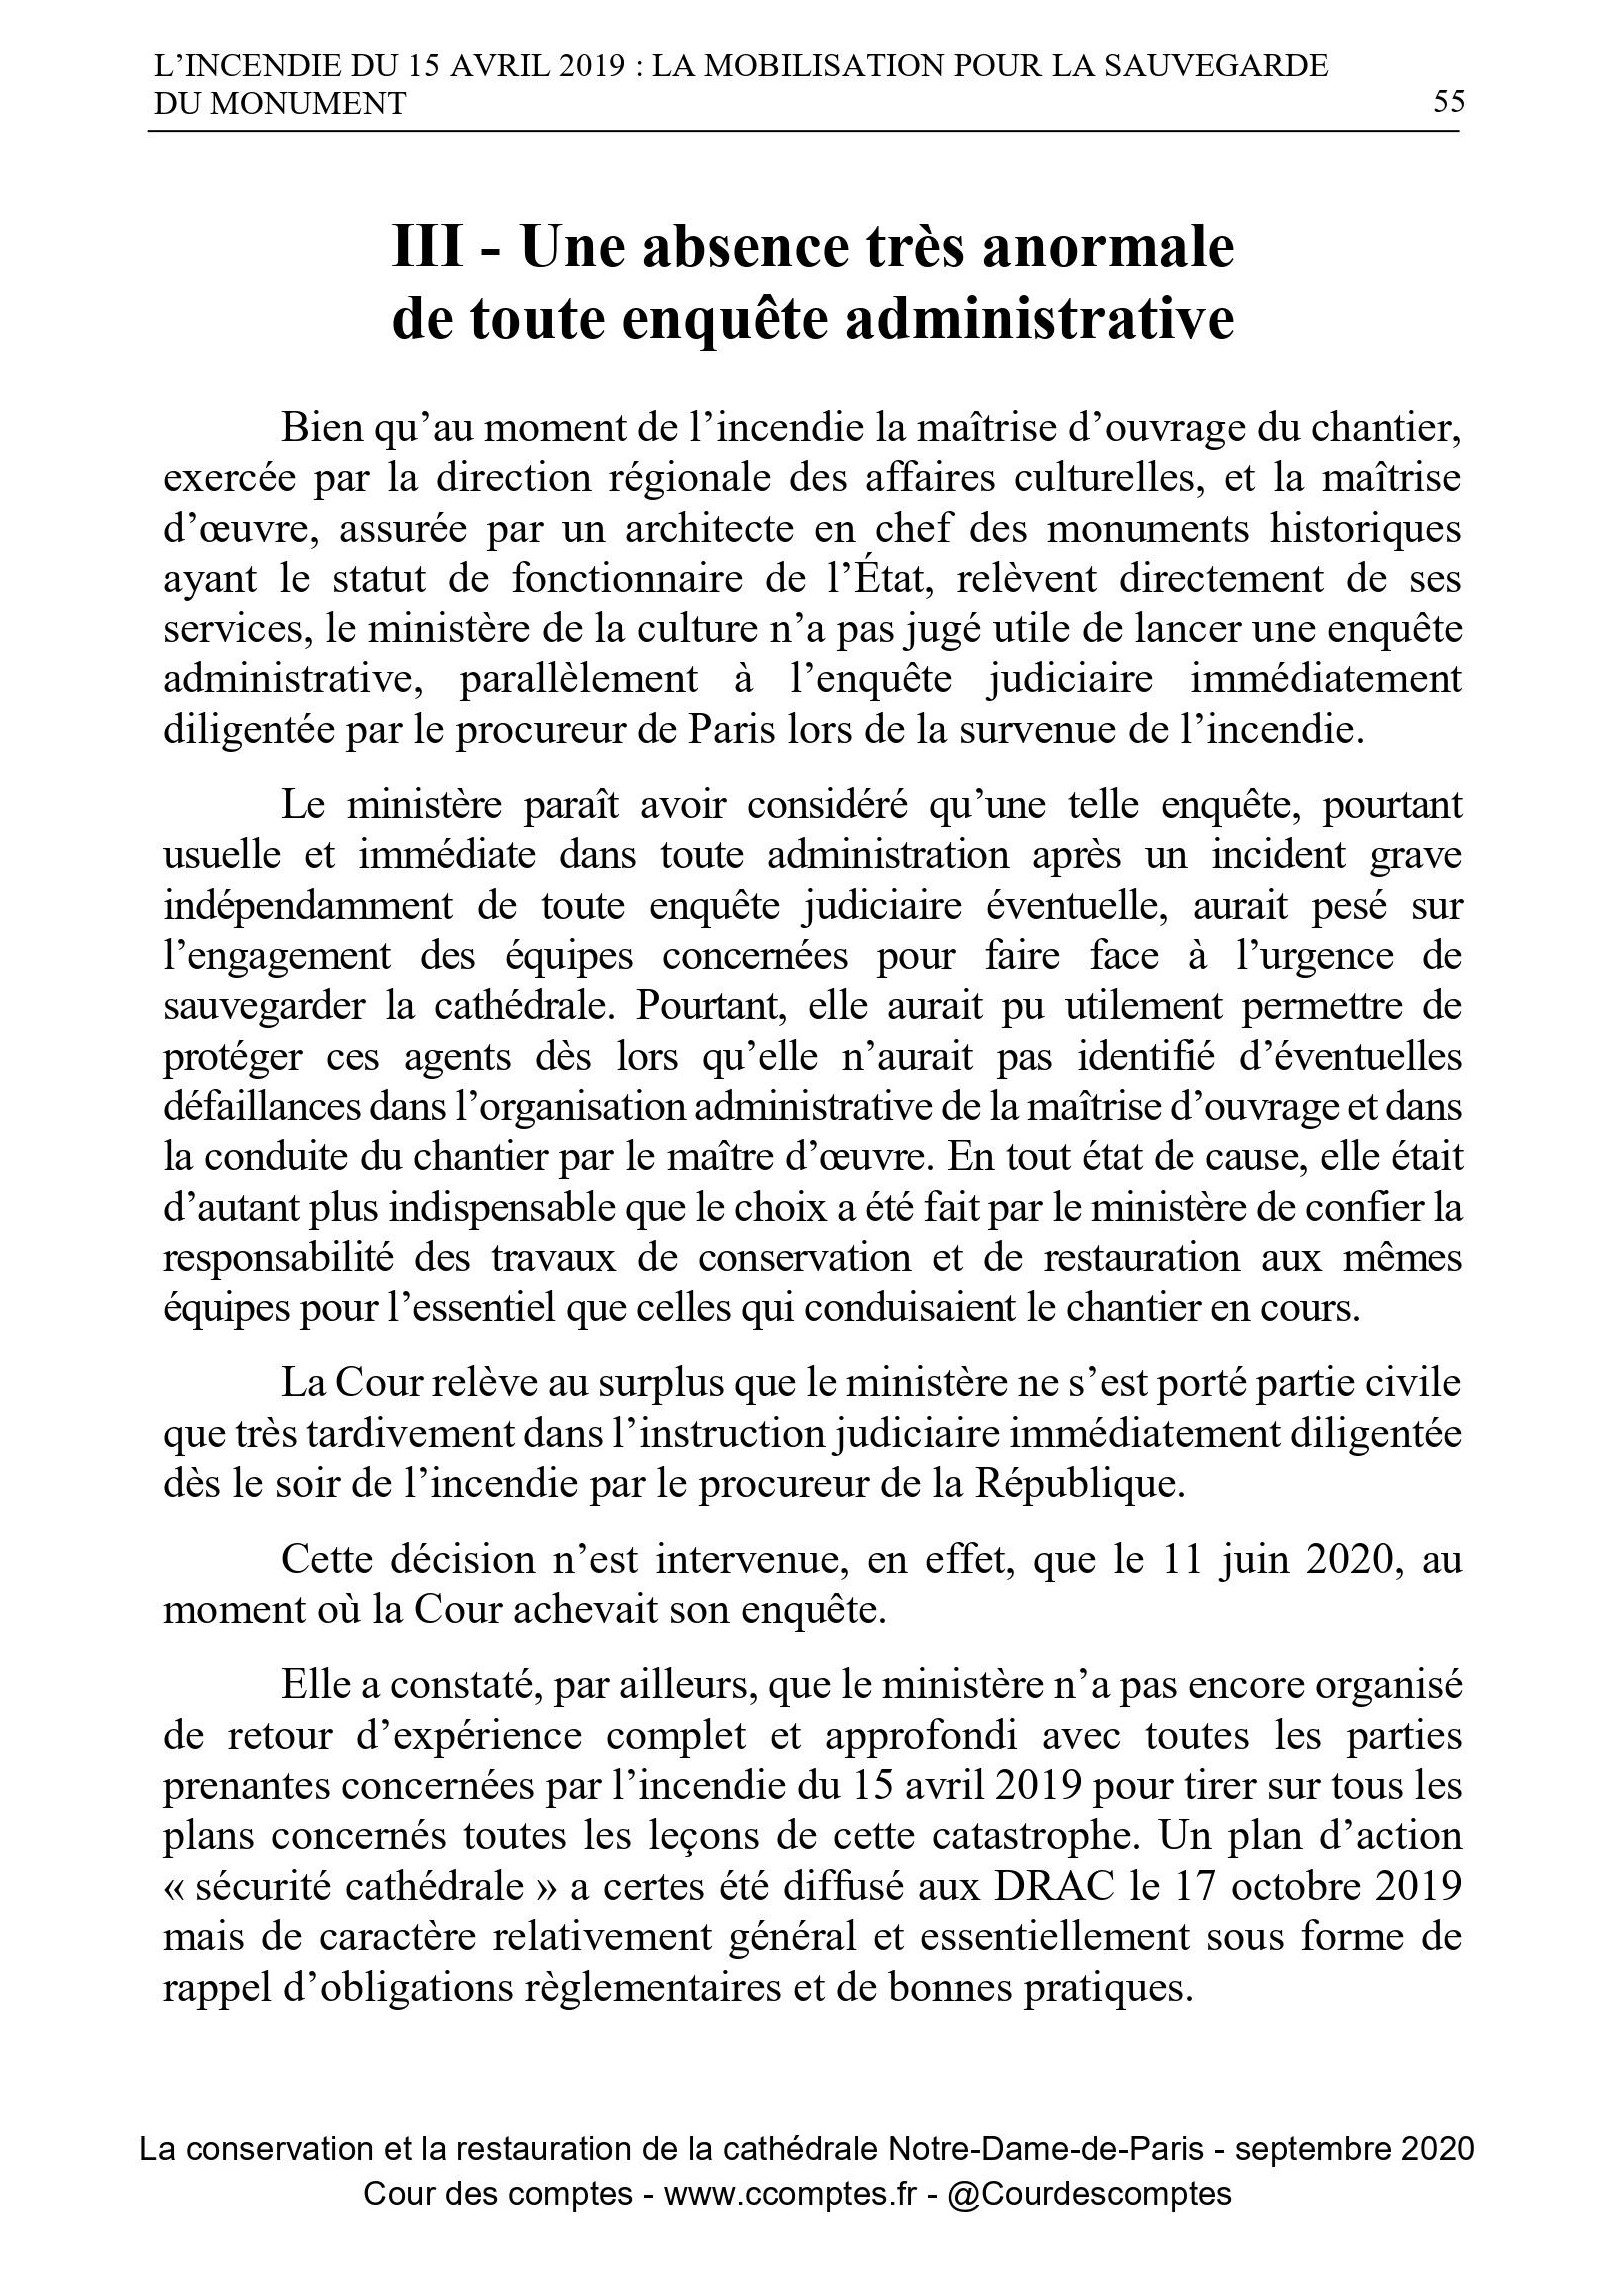 Cour des comptes, Notre-Dame, p. 55